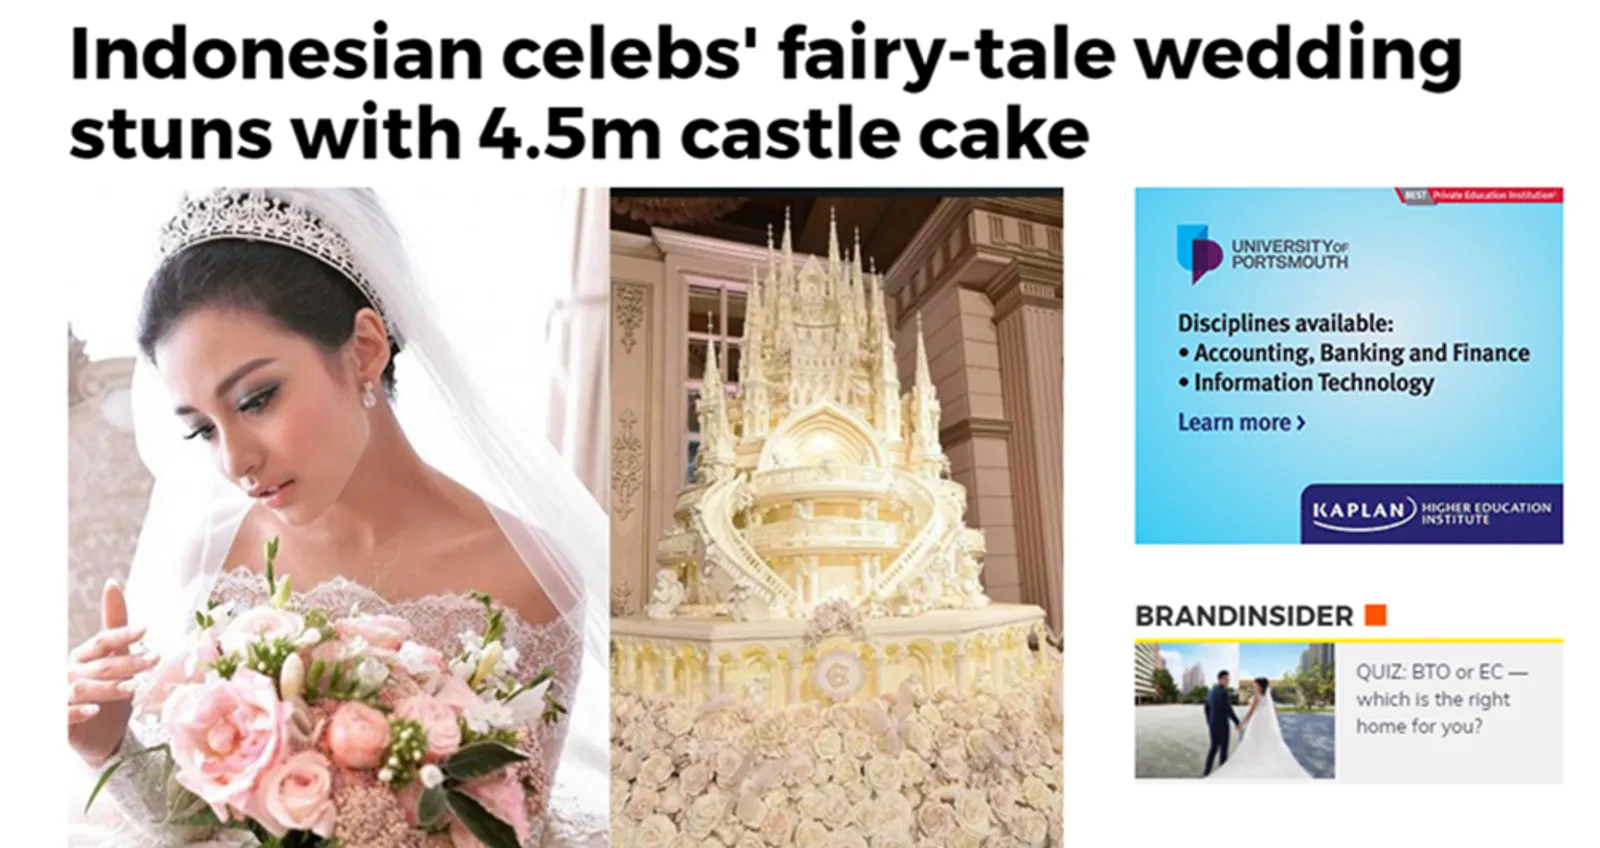 Unik, Pernikahan 5 Seleb Indonesia Ini Viral di Media Luar Negeri